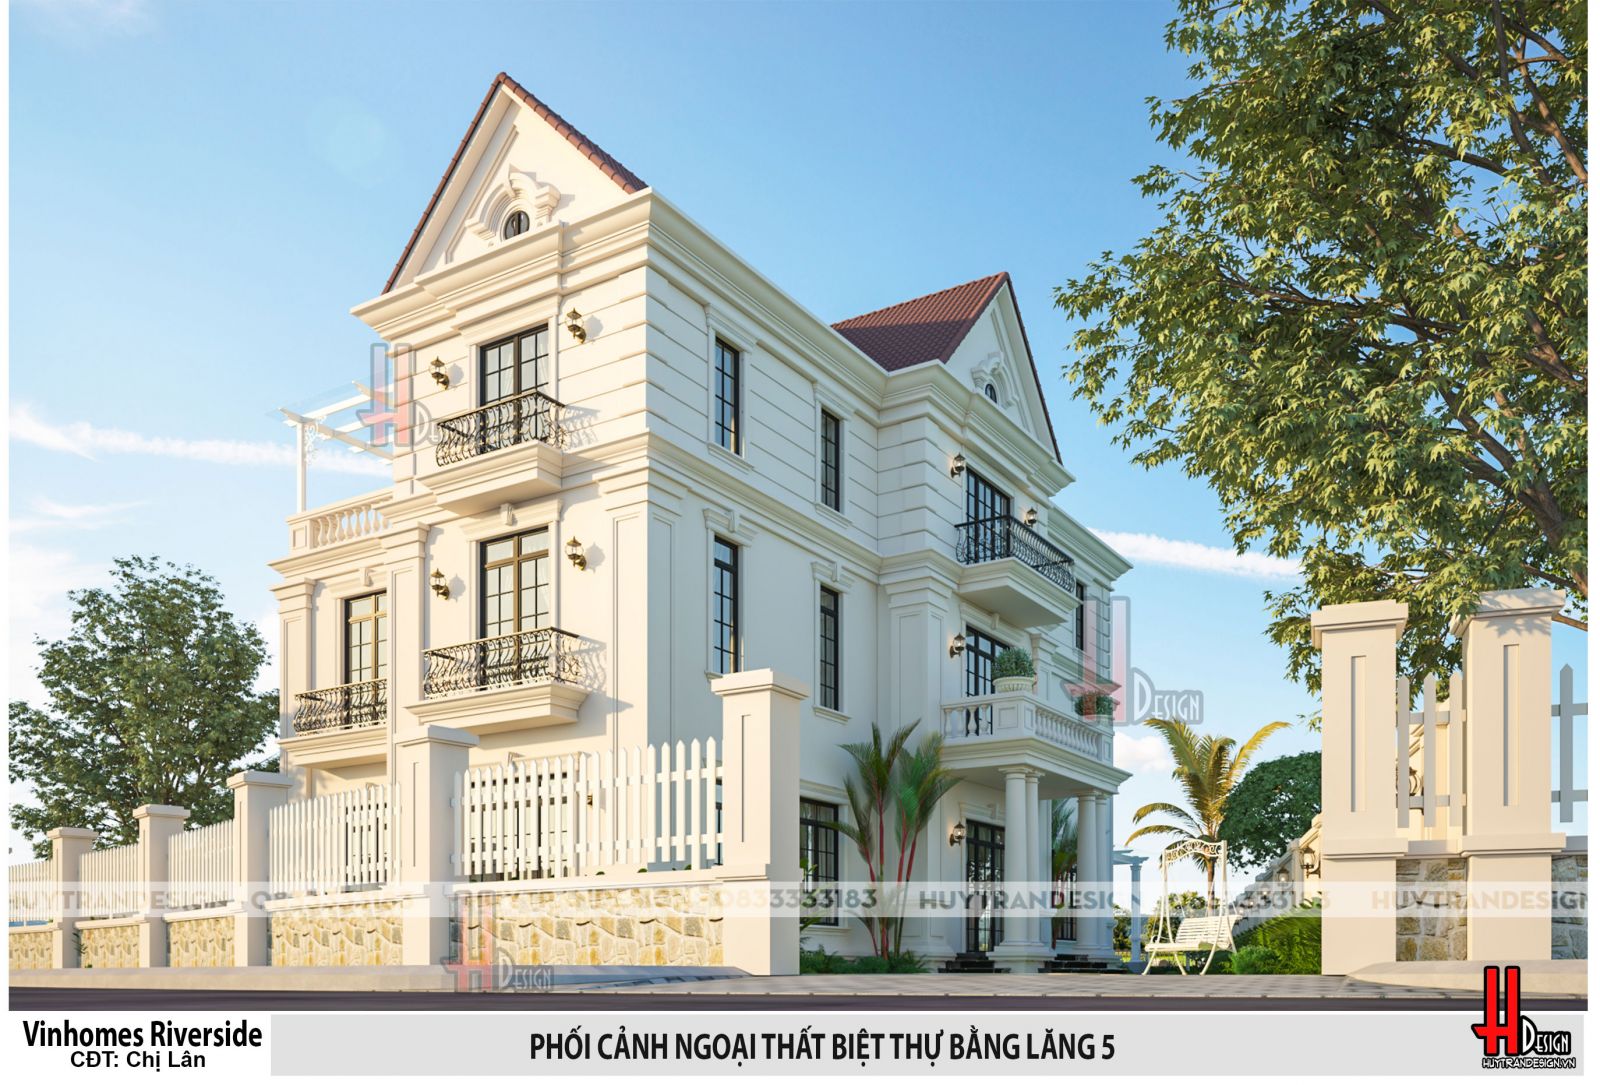 Mẫu biệt thự 3 tầng - Huytrandesign tư vấn, thiết kế, thi công, sửa chữa nhà đẹp tại Long Biên, Hà Nội - v2